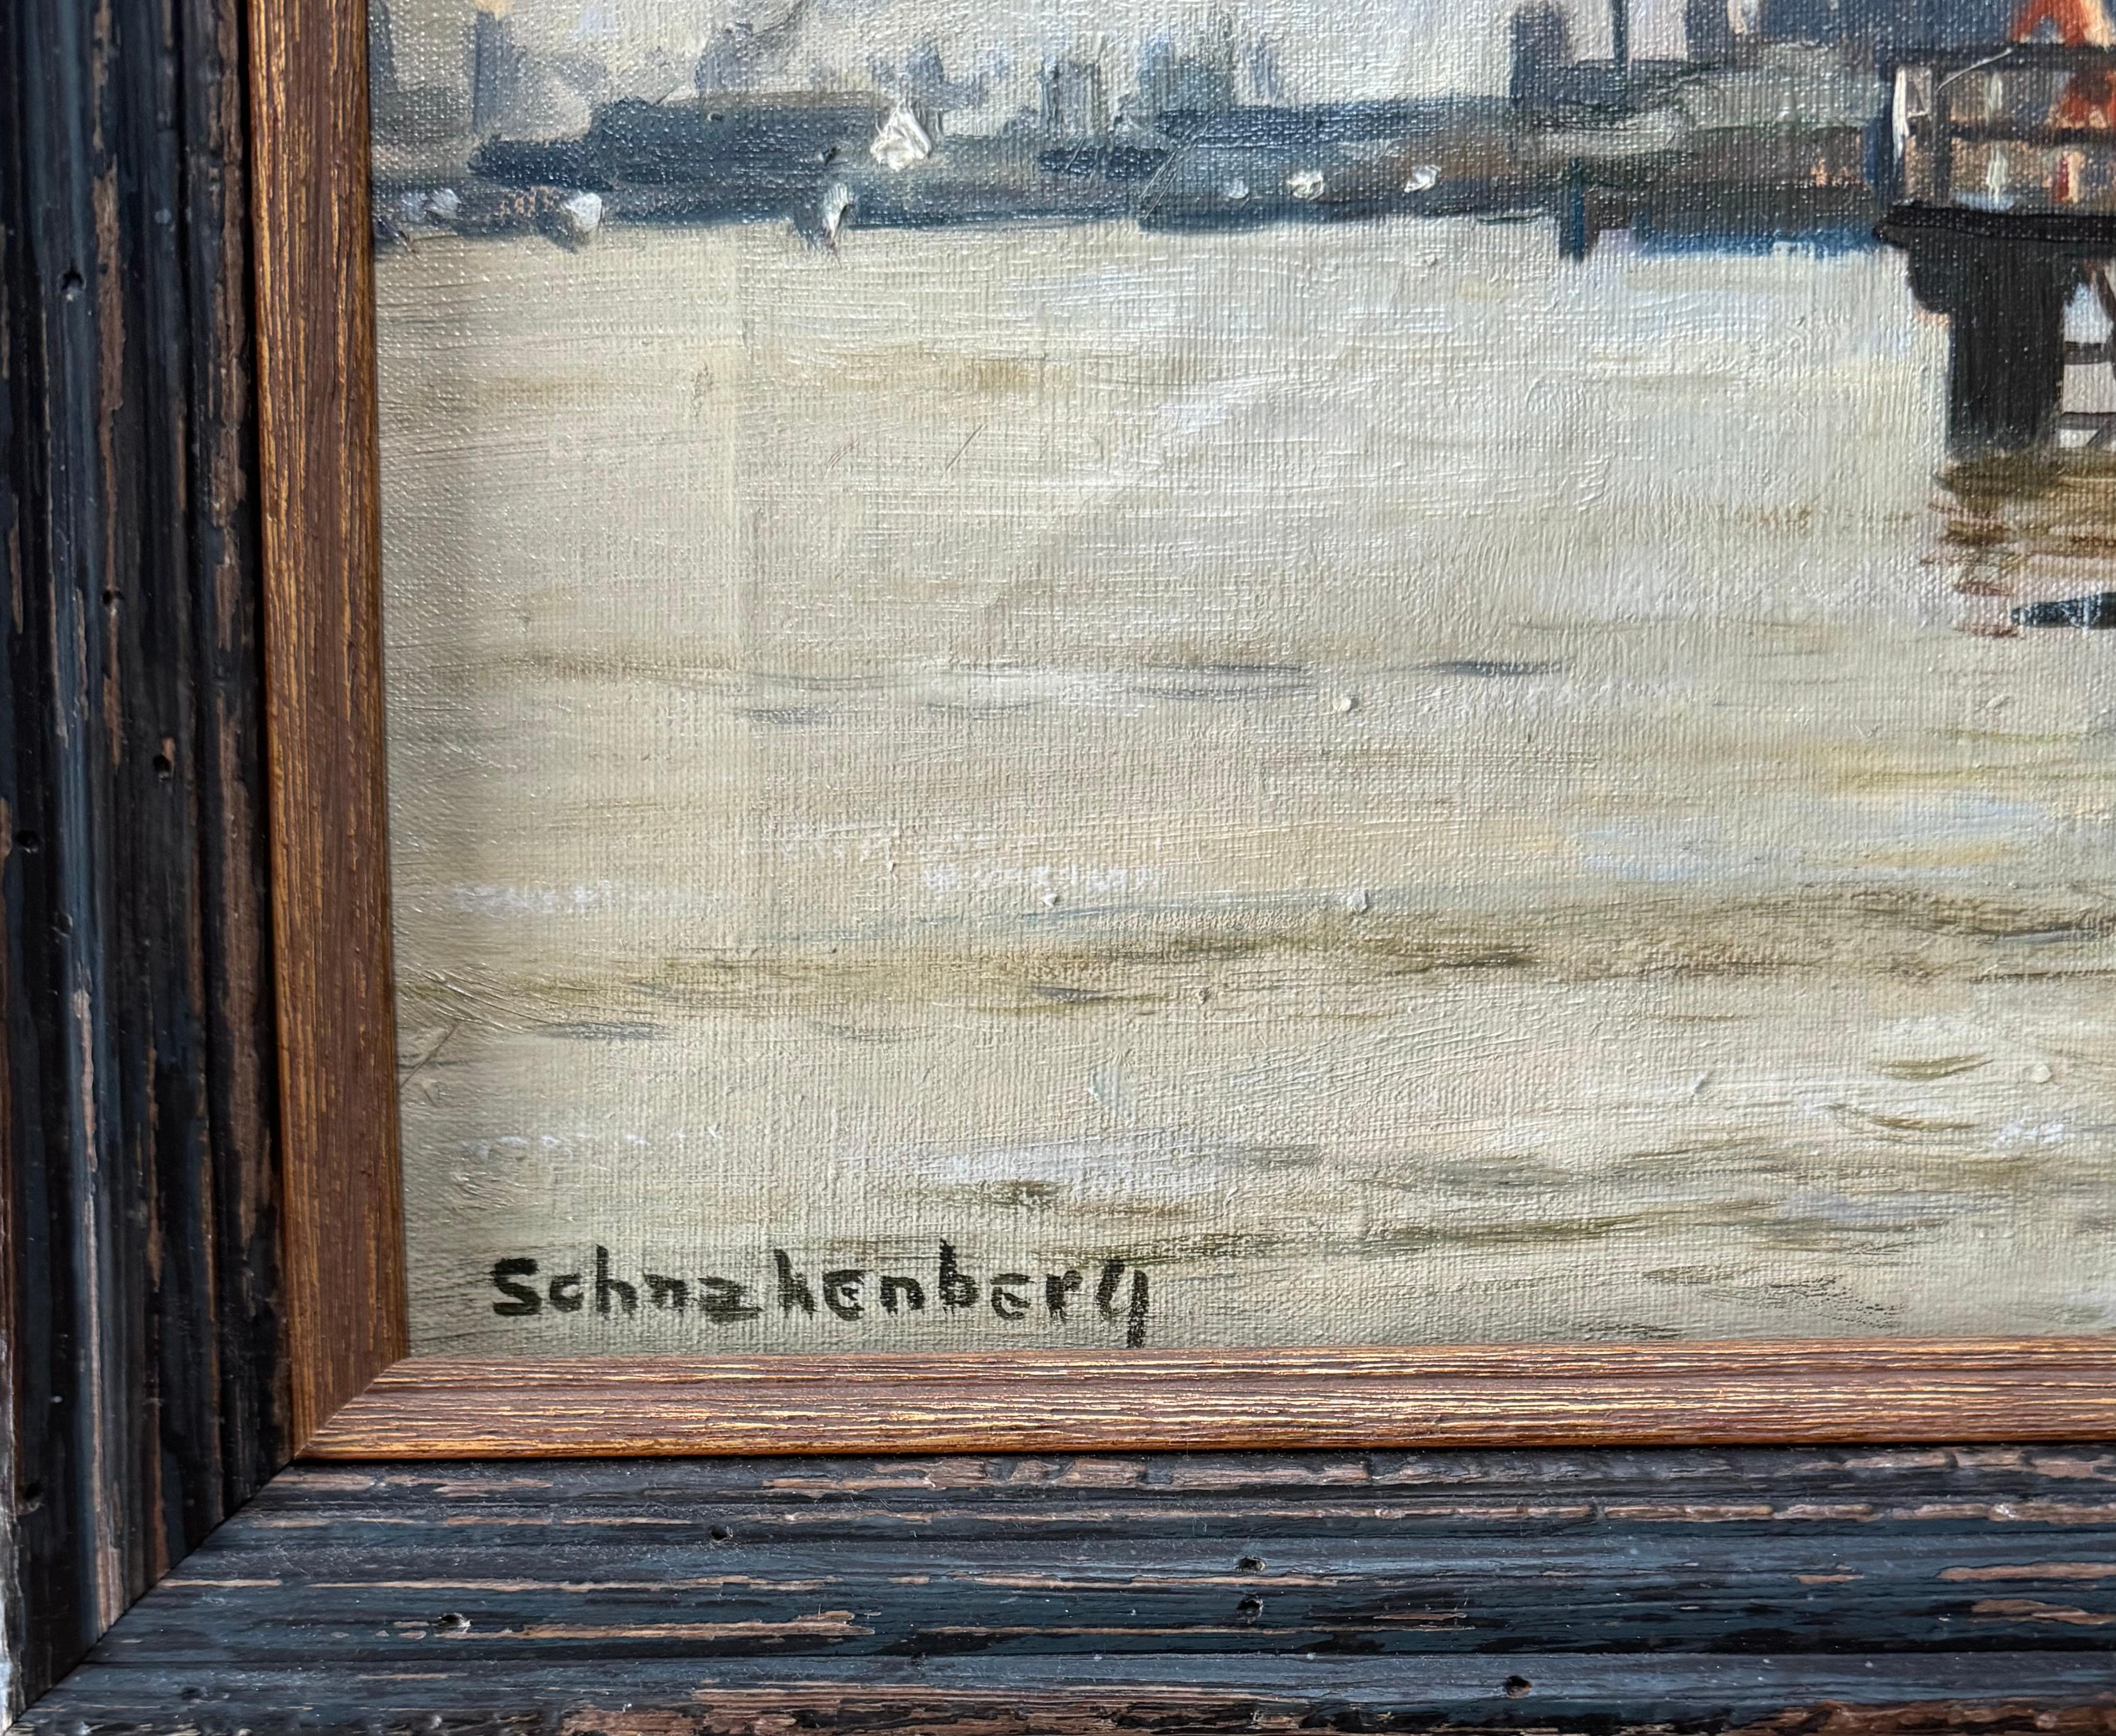 Boys Swimming Industrial Landscape WPA Mitte des 20. Jahrhunderts Sozialer Realismus Modernismus (Amerikanische Moderne), Painting, von Henry Schnakenberg